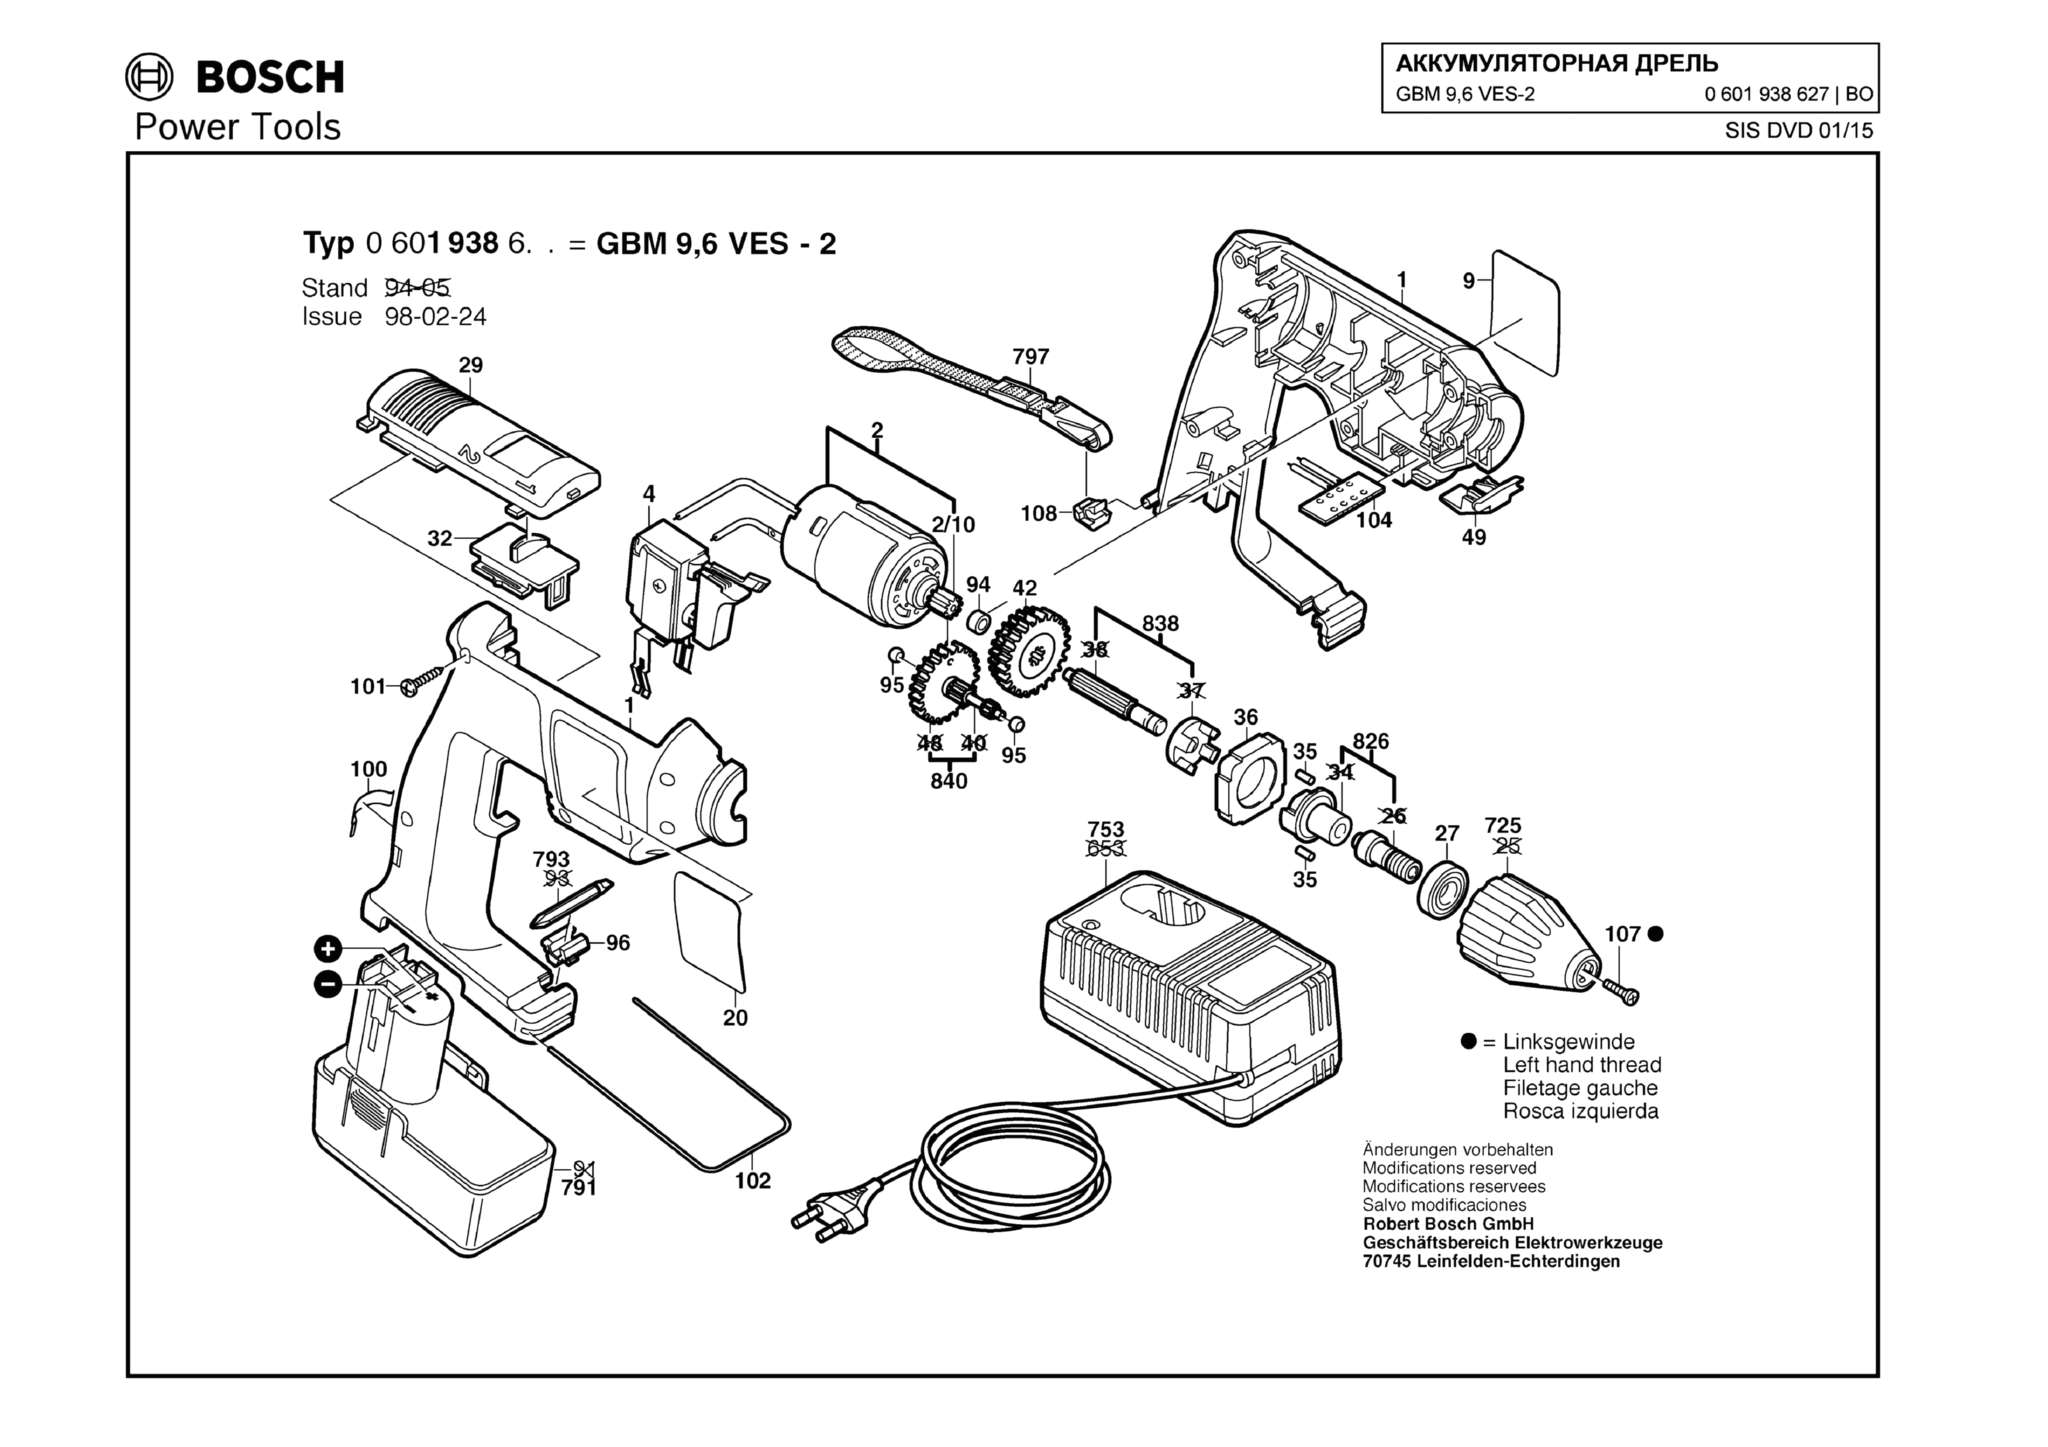 Запчасти, схема и деталировка Bosch GBM 9,6 VES-2 (ТИП 0601938627)